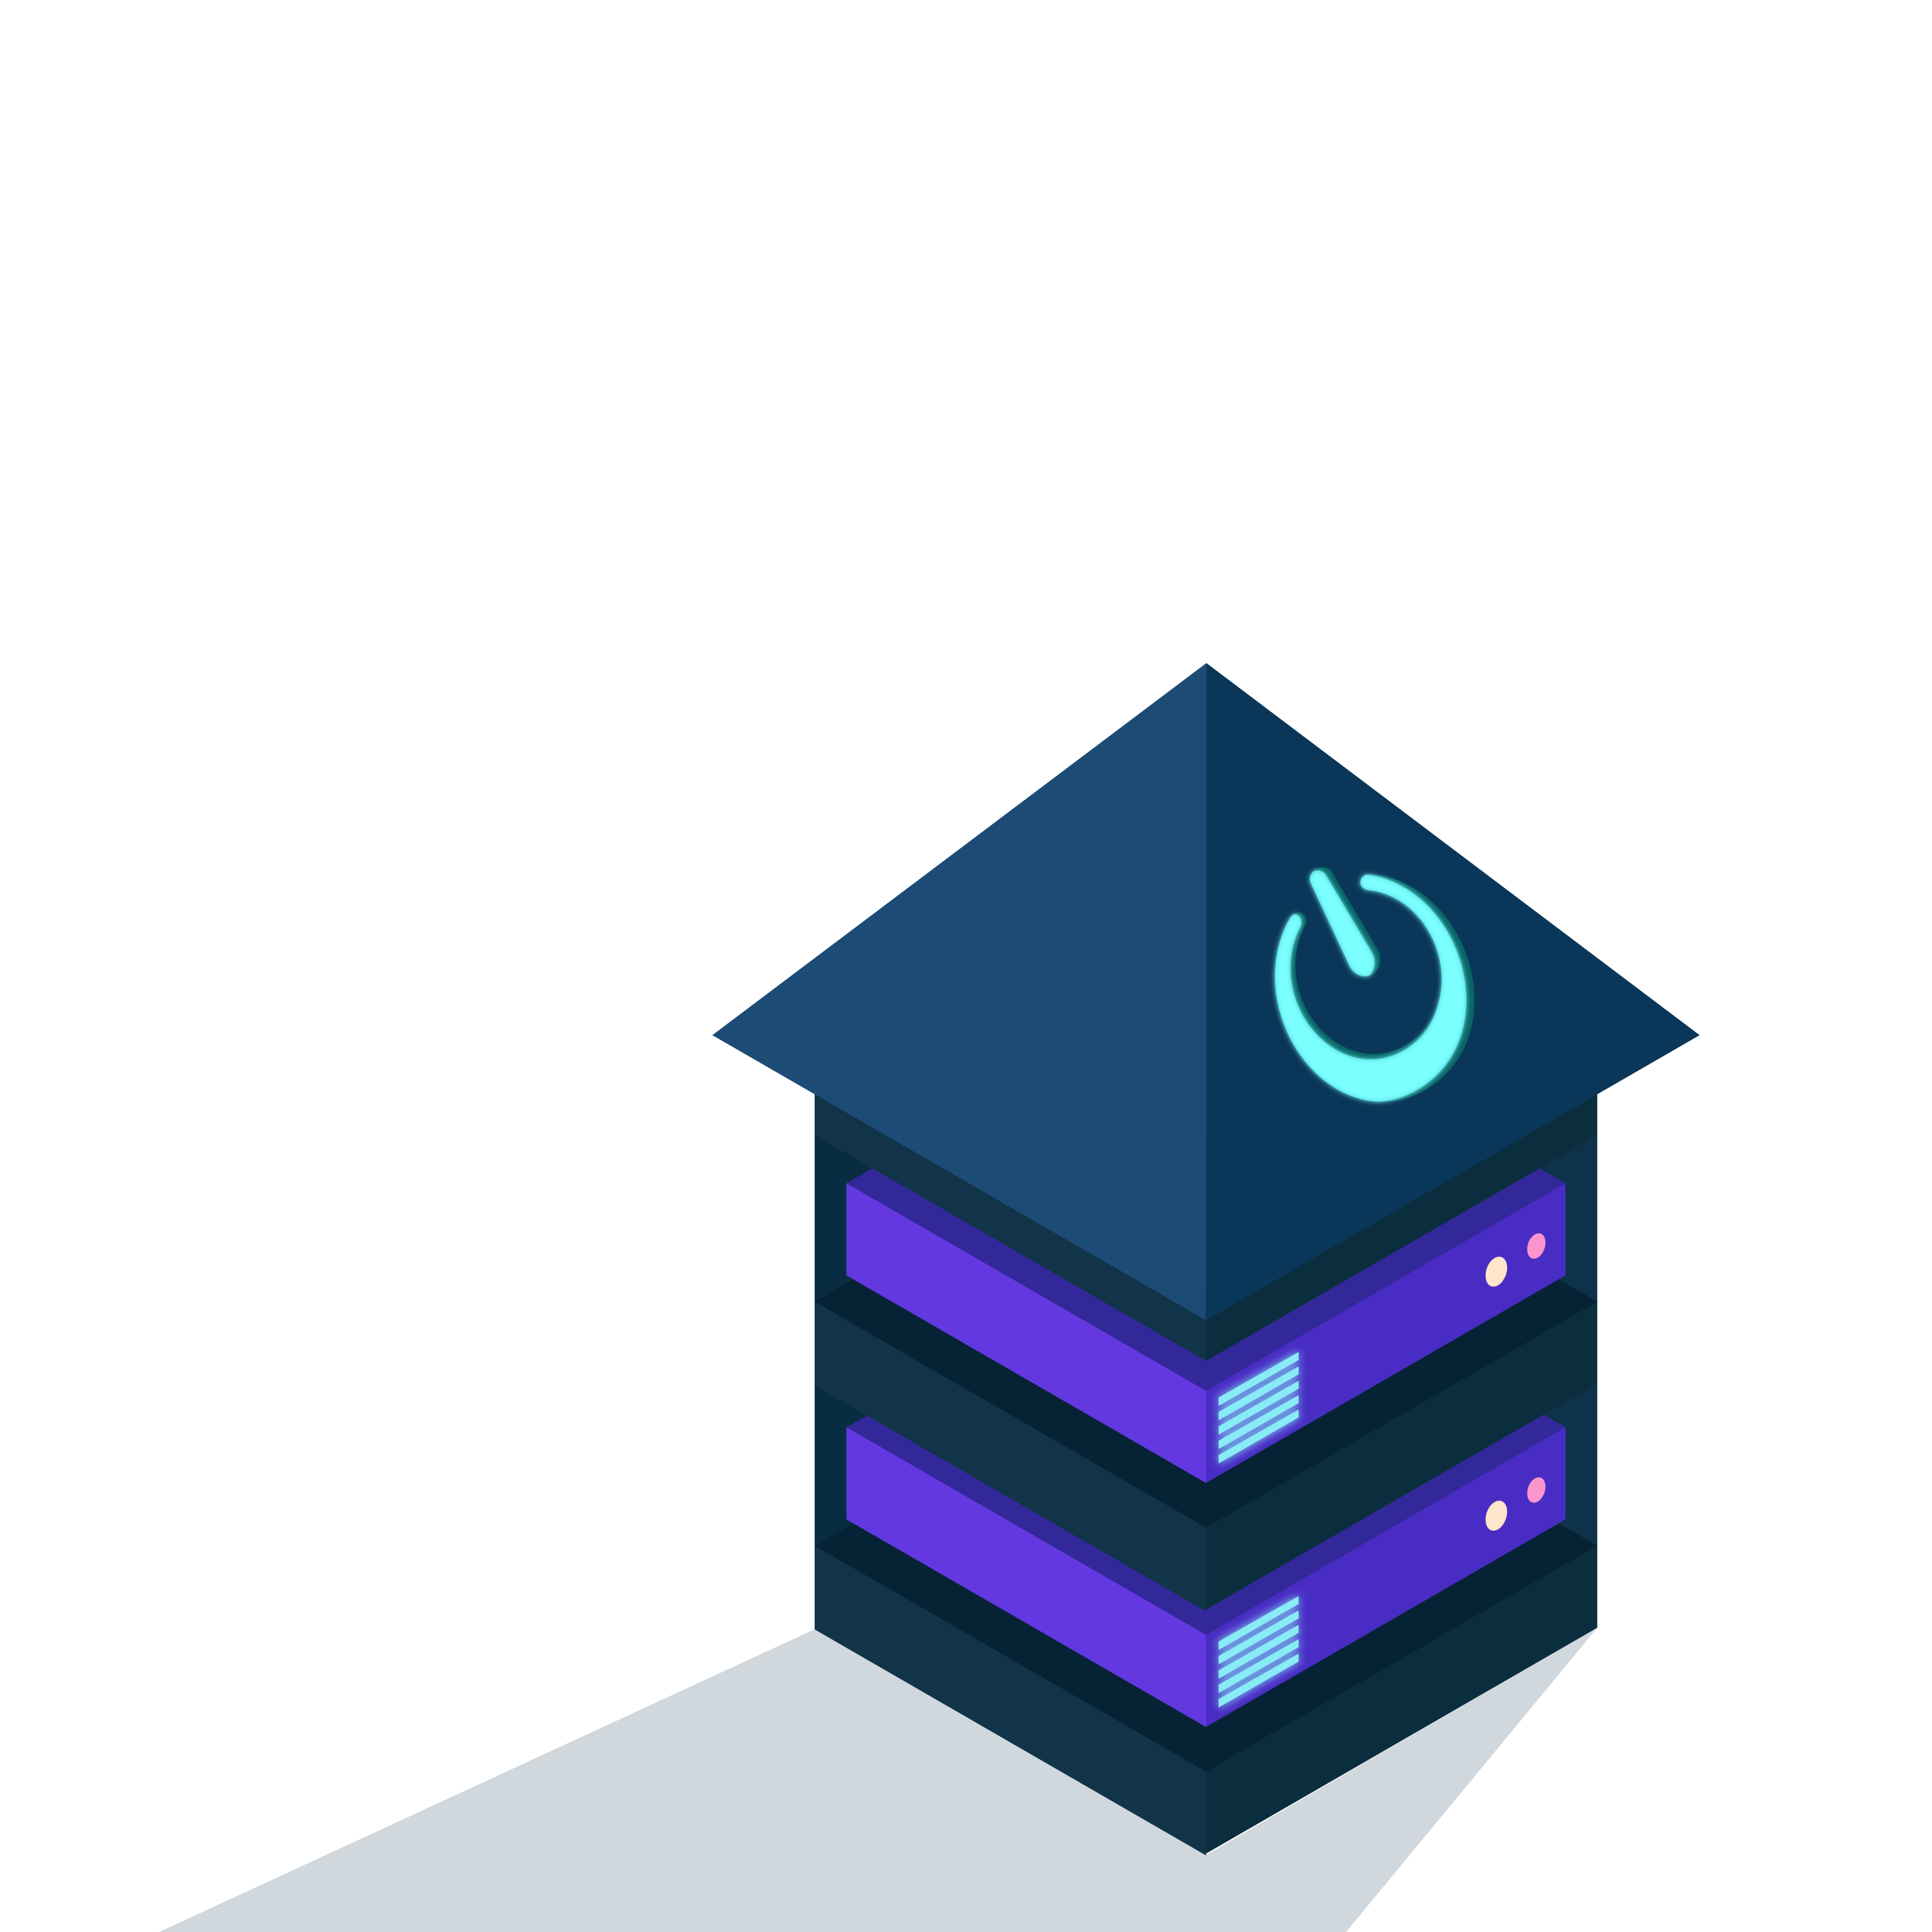 The Homelab Show